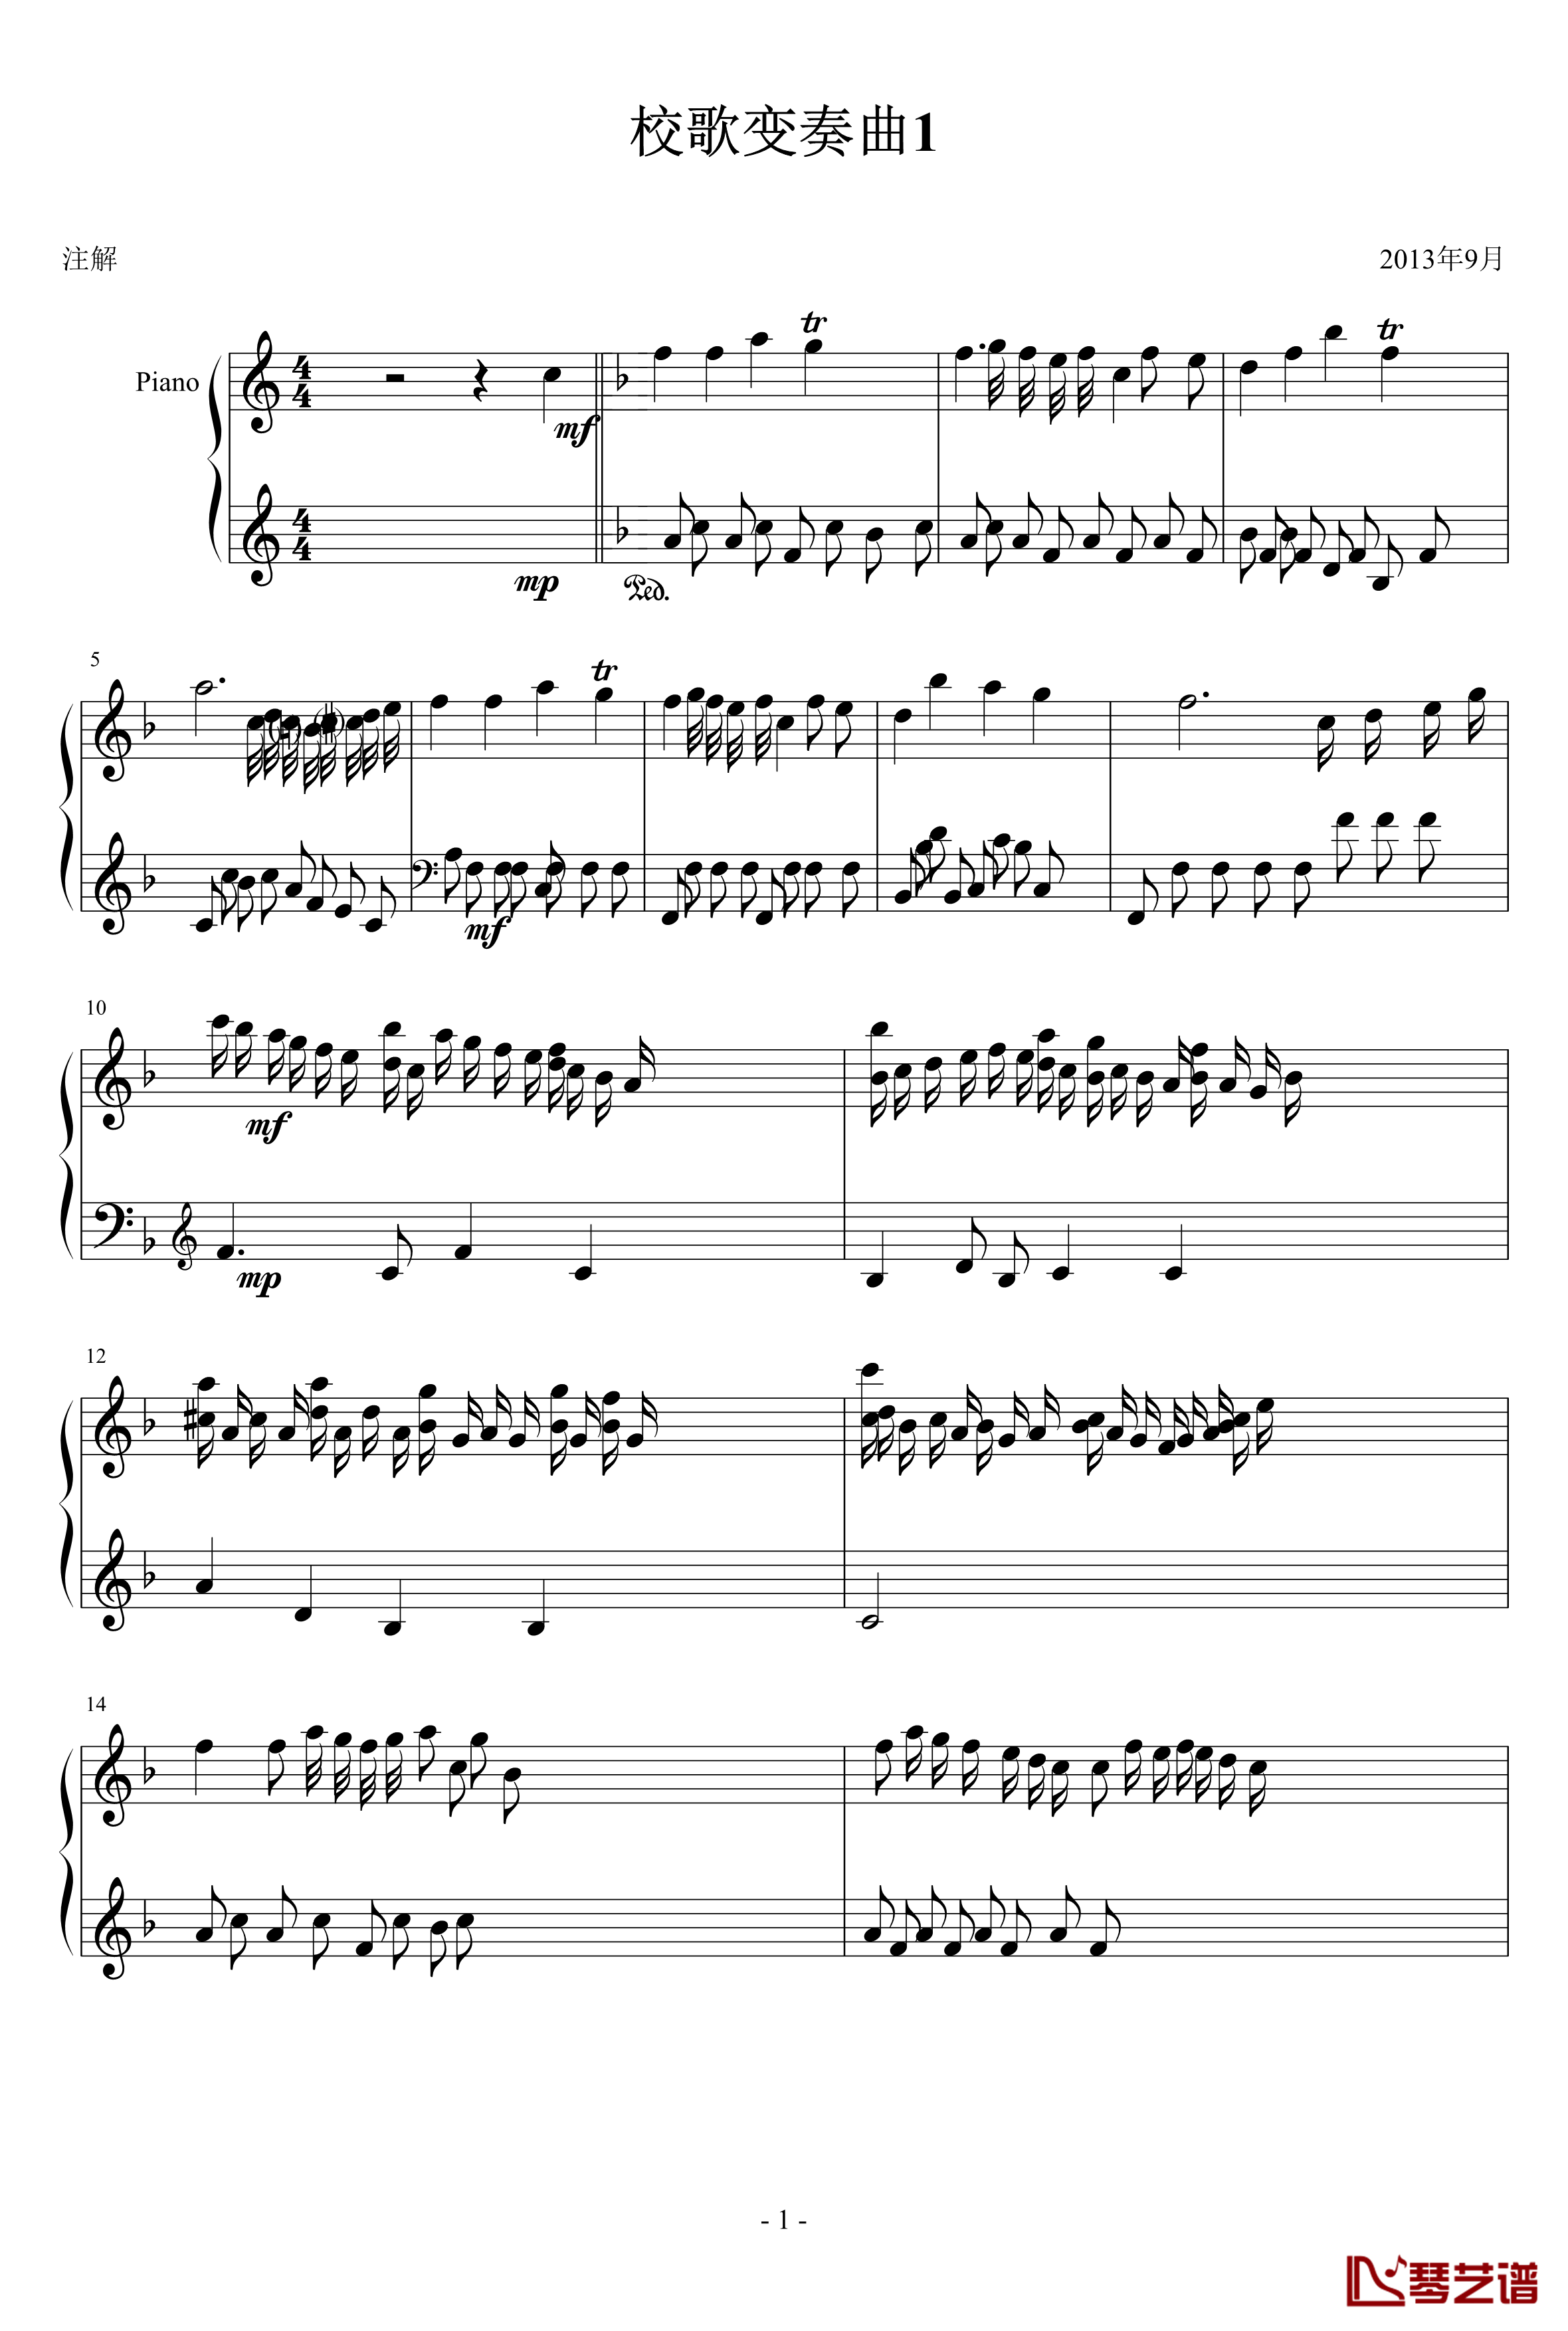 校歌变奏曲1钢琴谱-十分古典的一曲-琴欲1